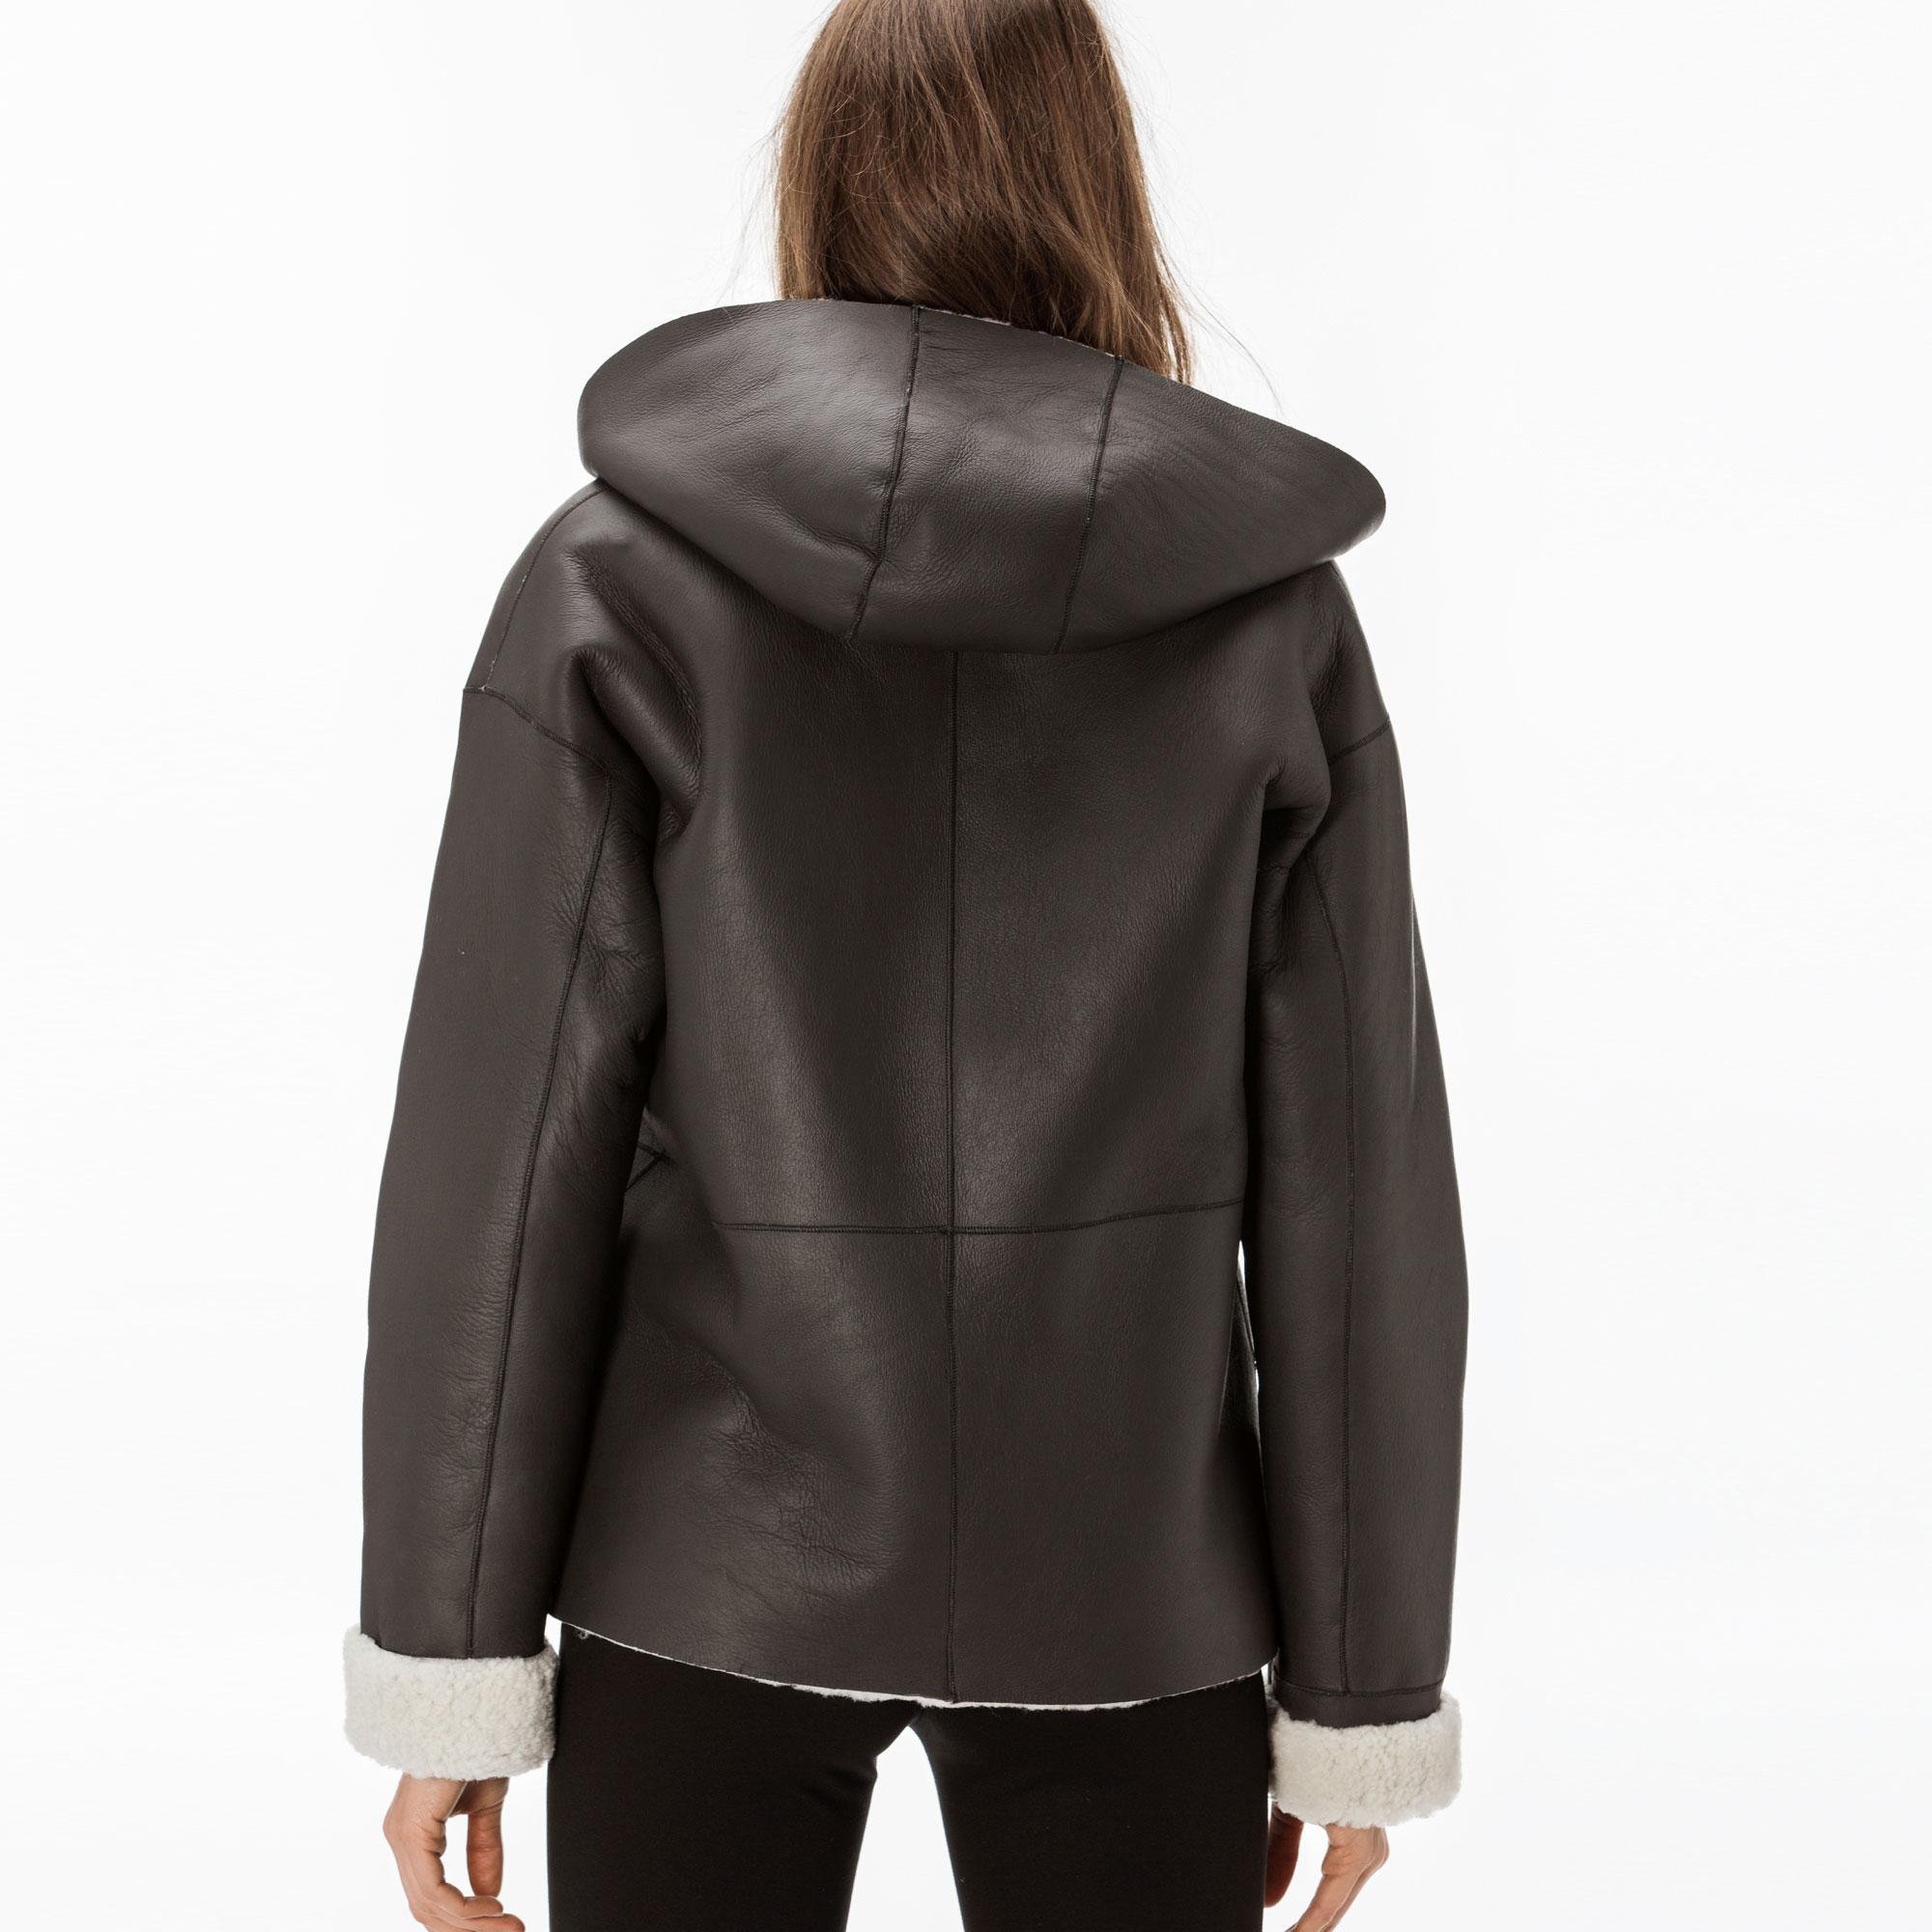 Lacoste Women's Leather Jacket